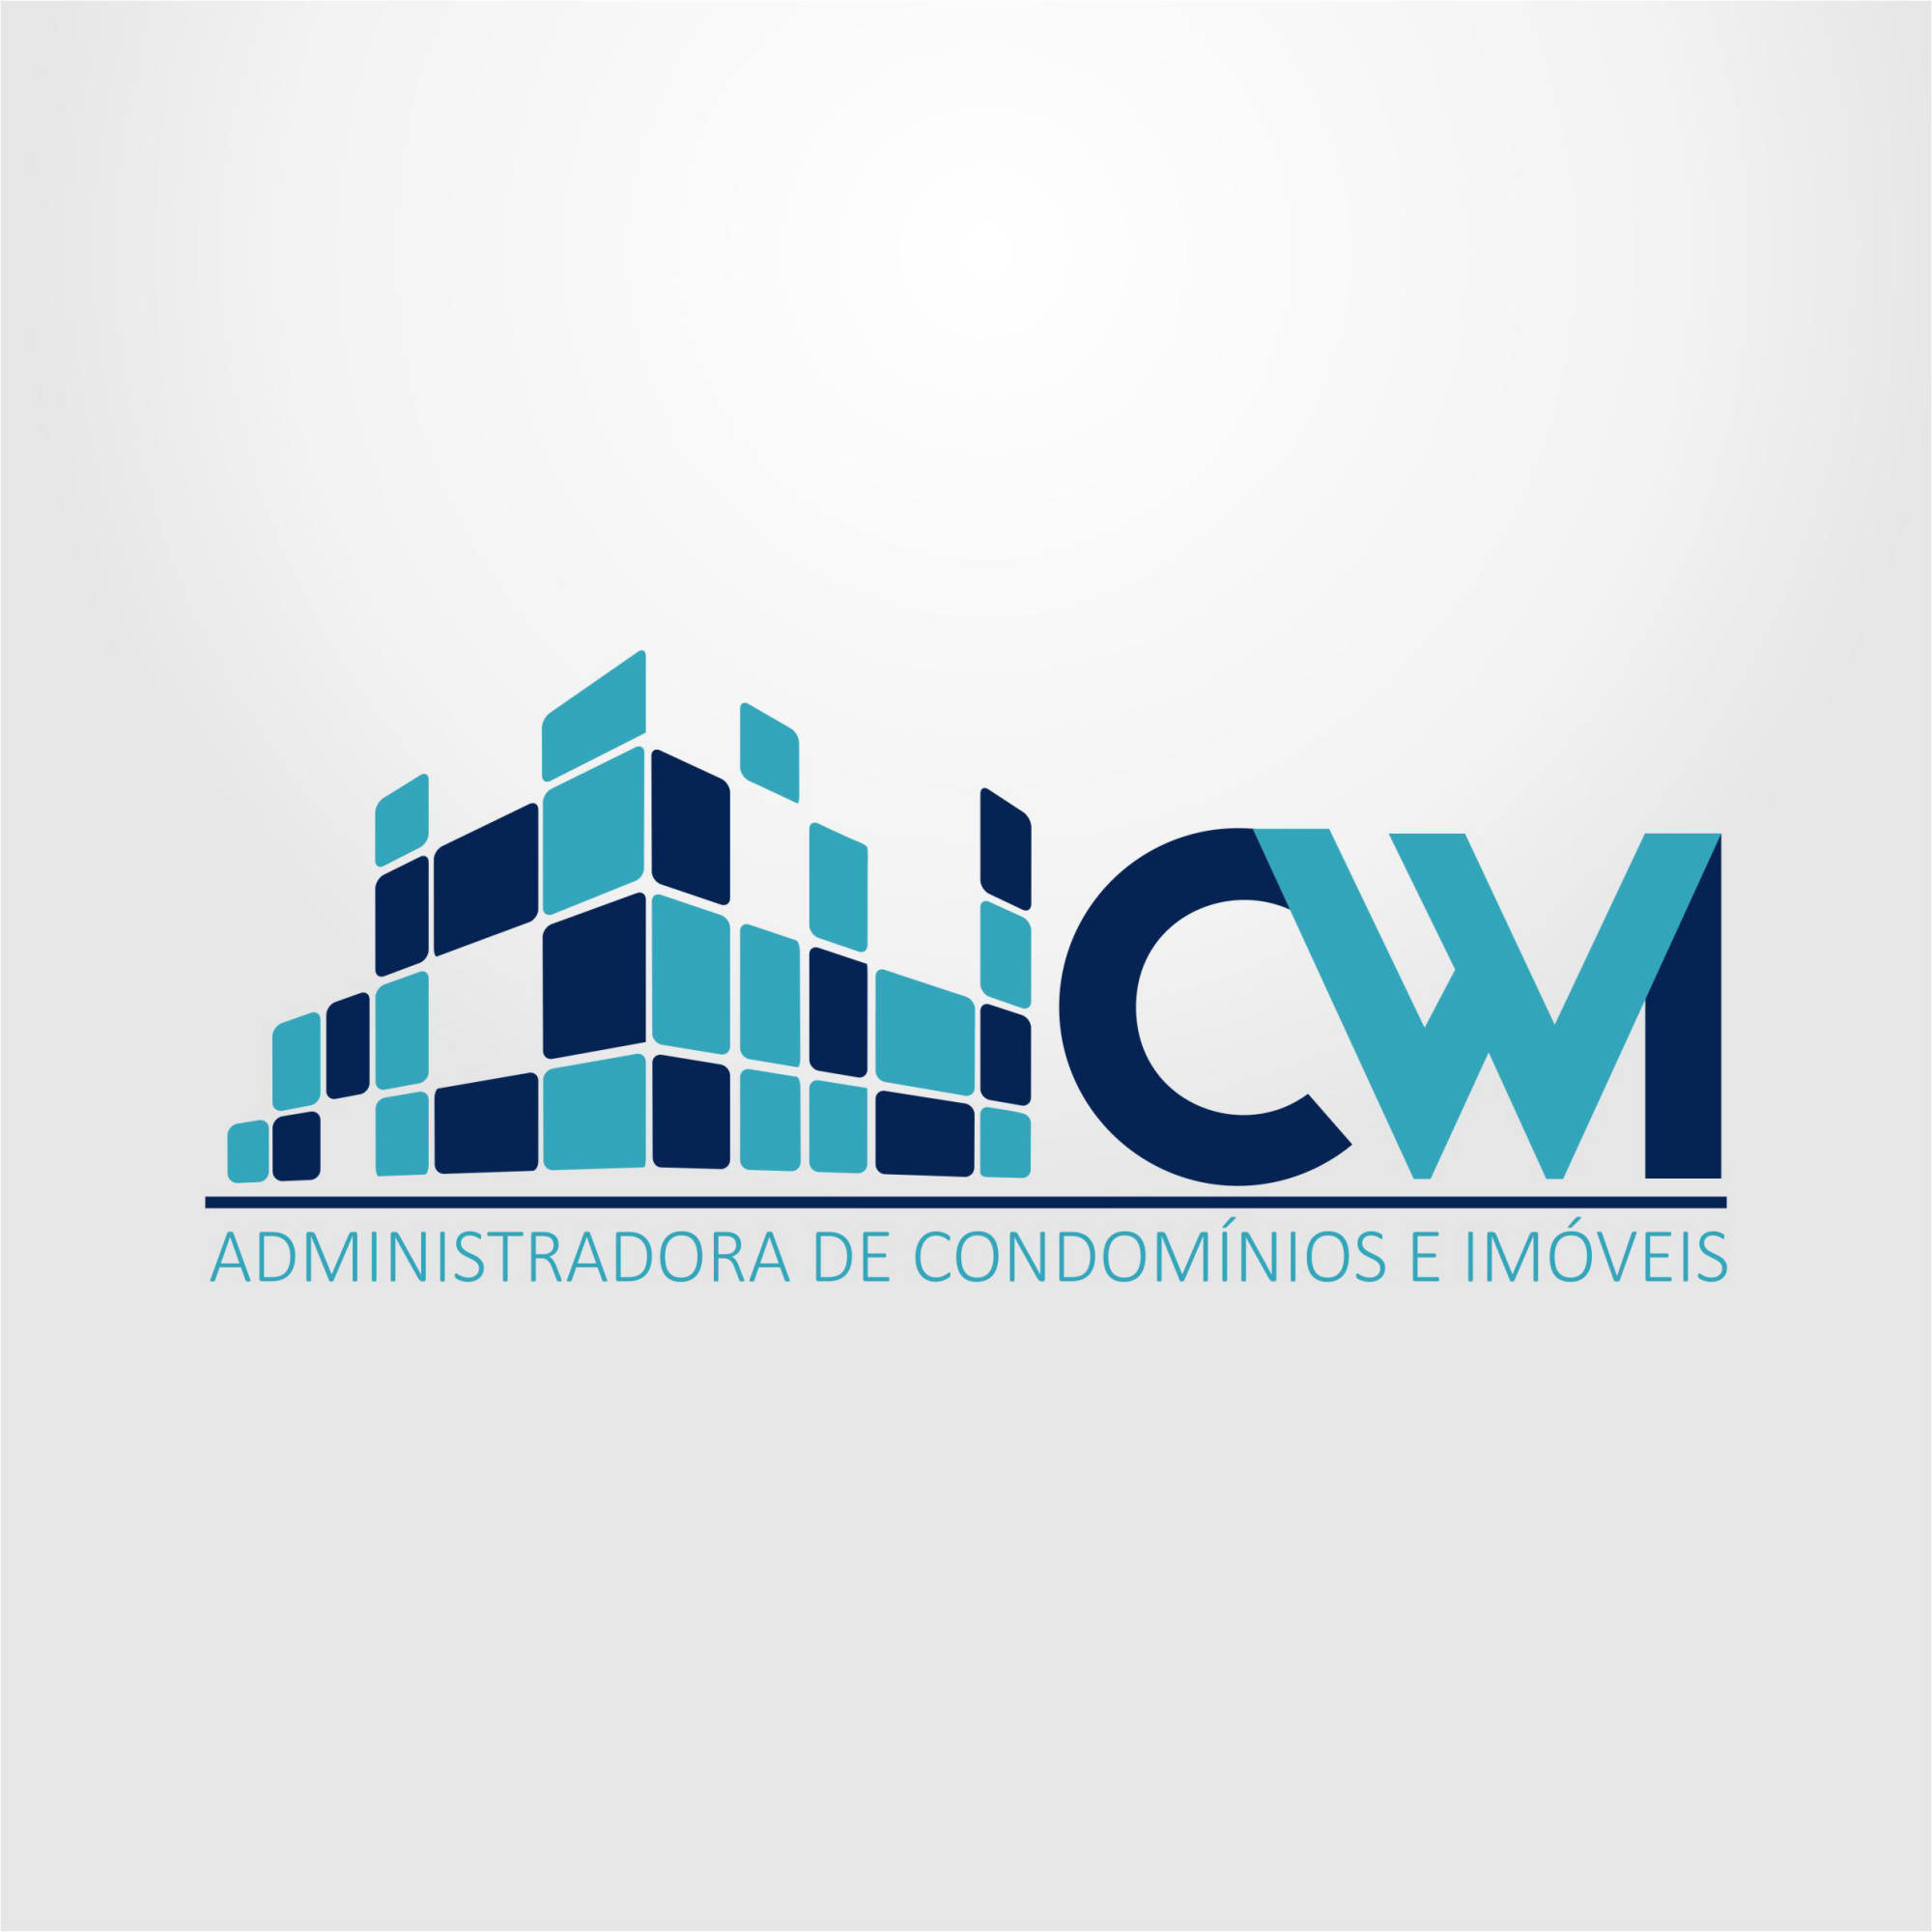 Logo CWI